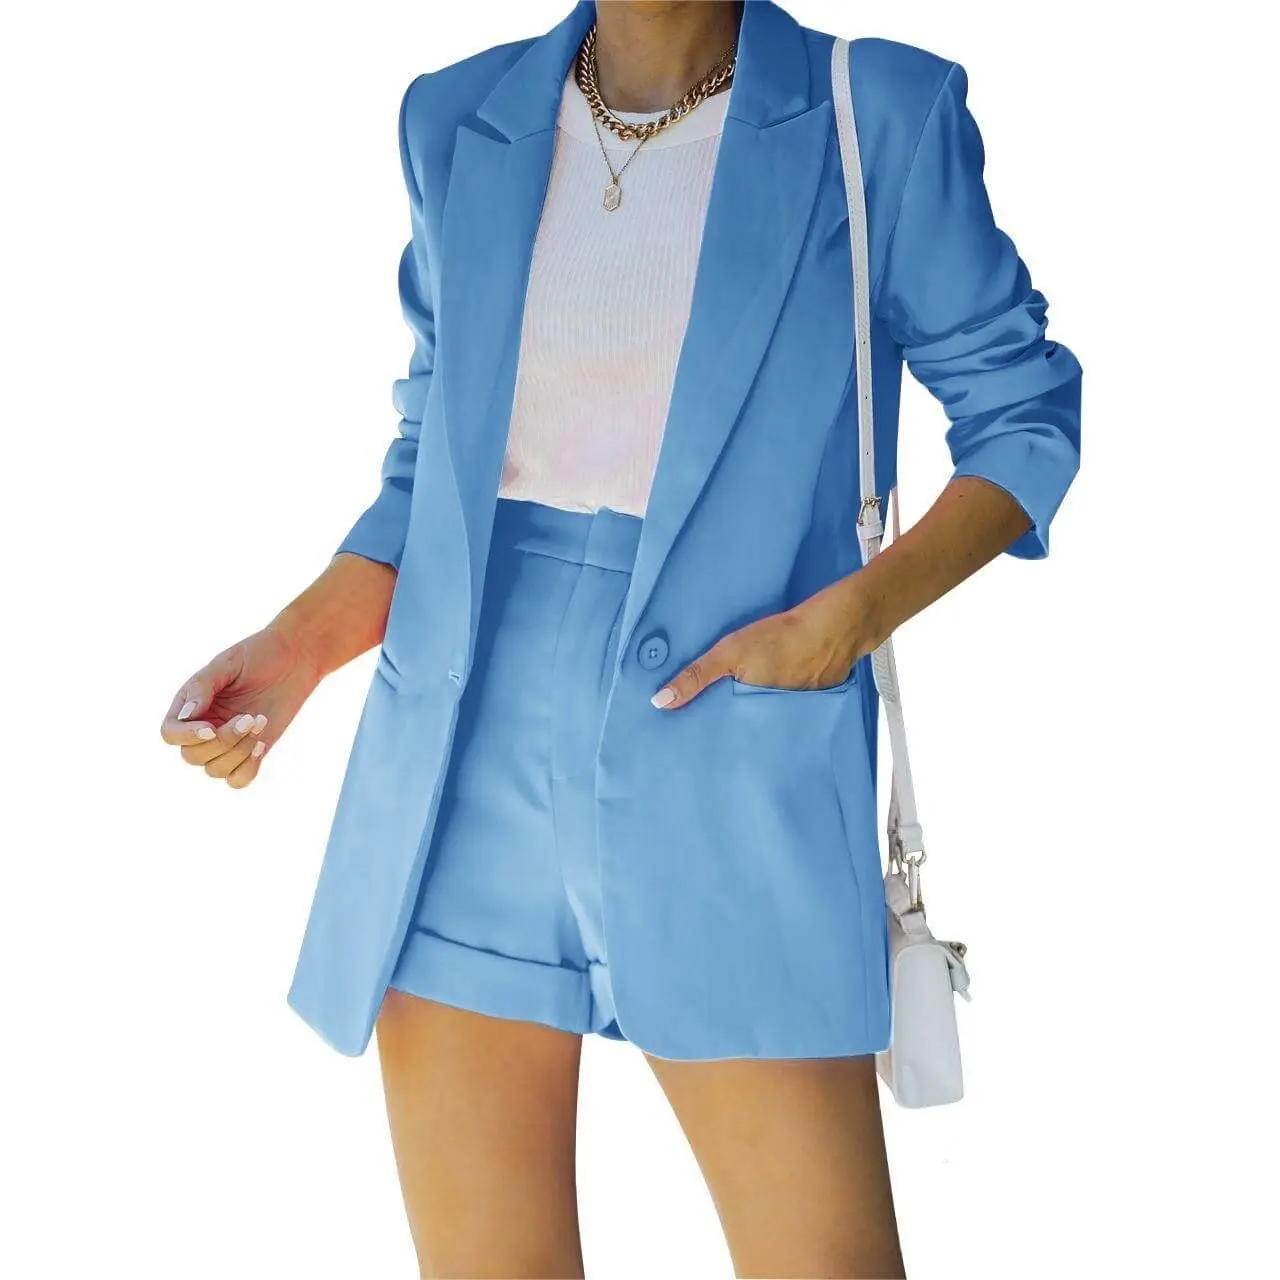 2 Pieces Business Suit Sets Two Pieces Sets Office Lady Work Wear Women Formal Suits Blazer Jacket Vest Pants Set